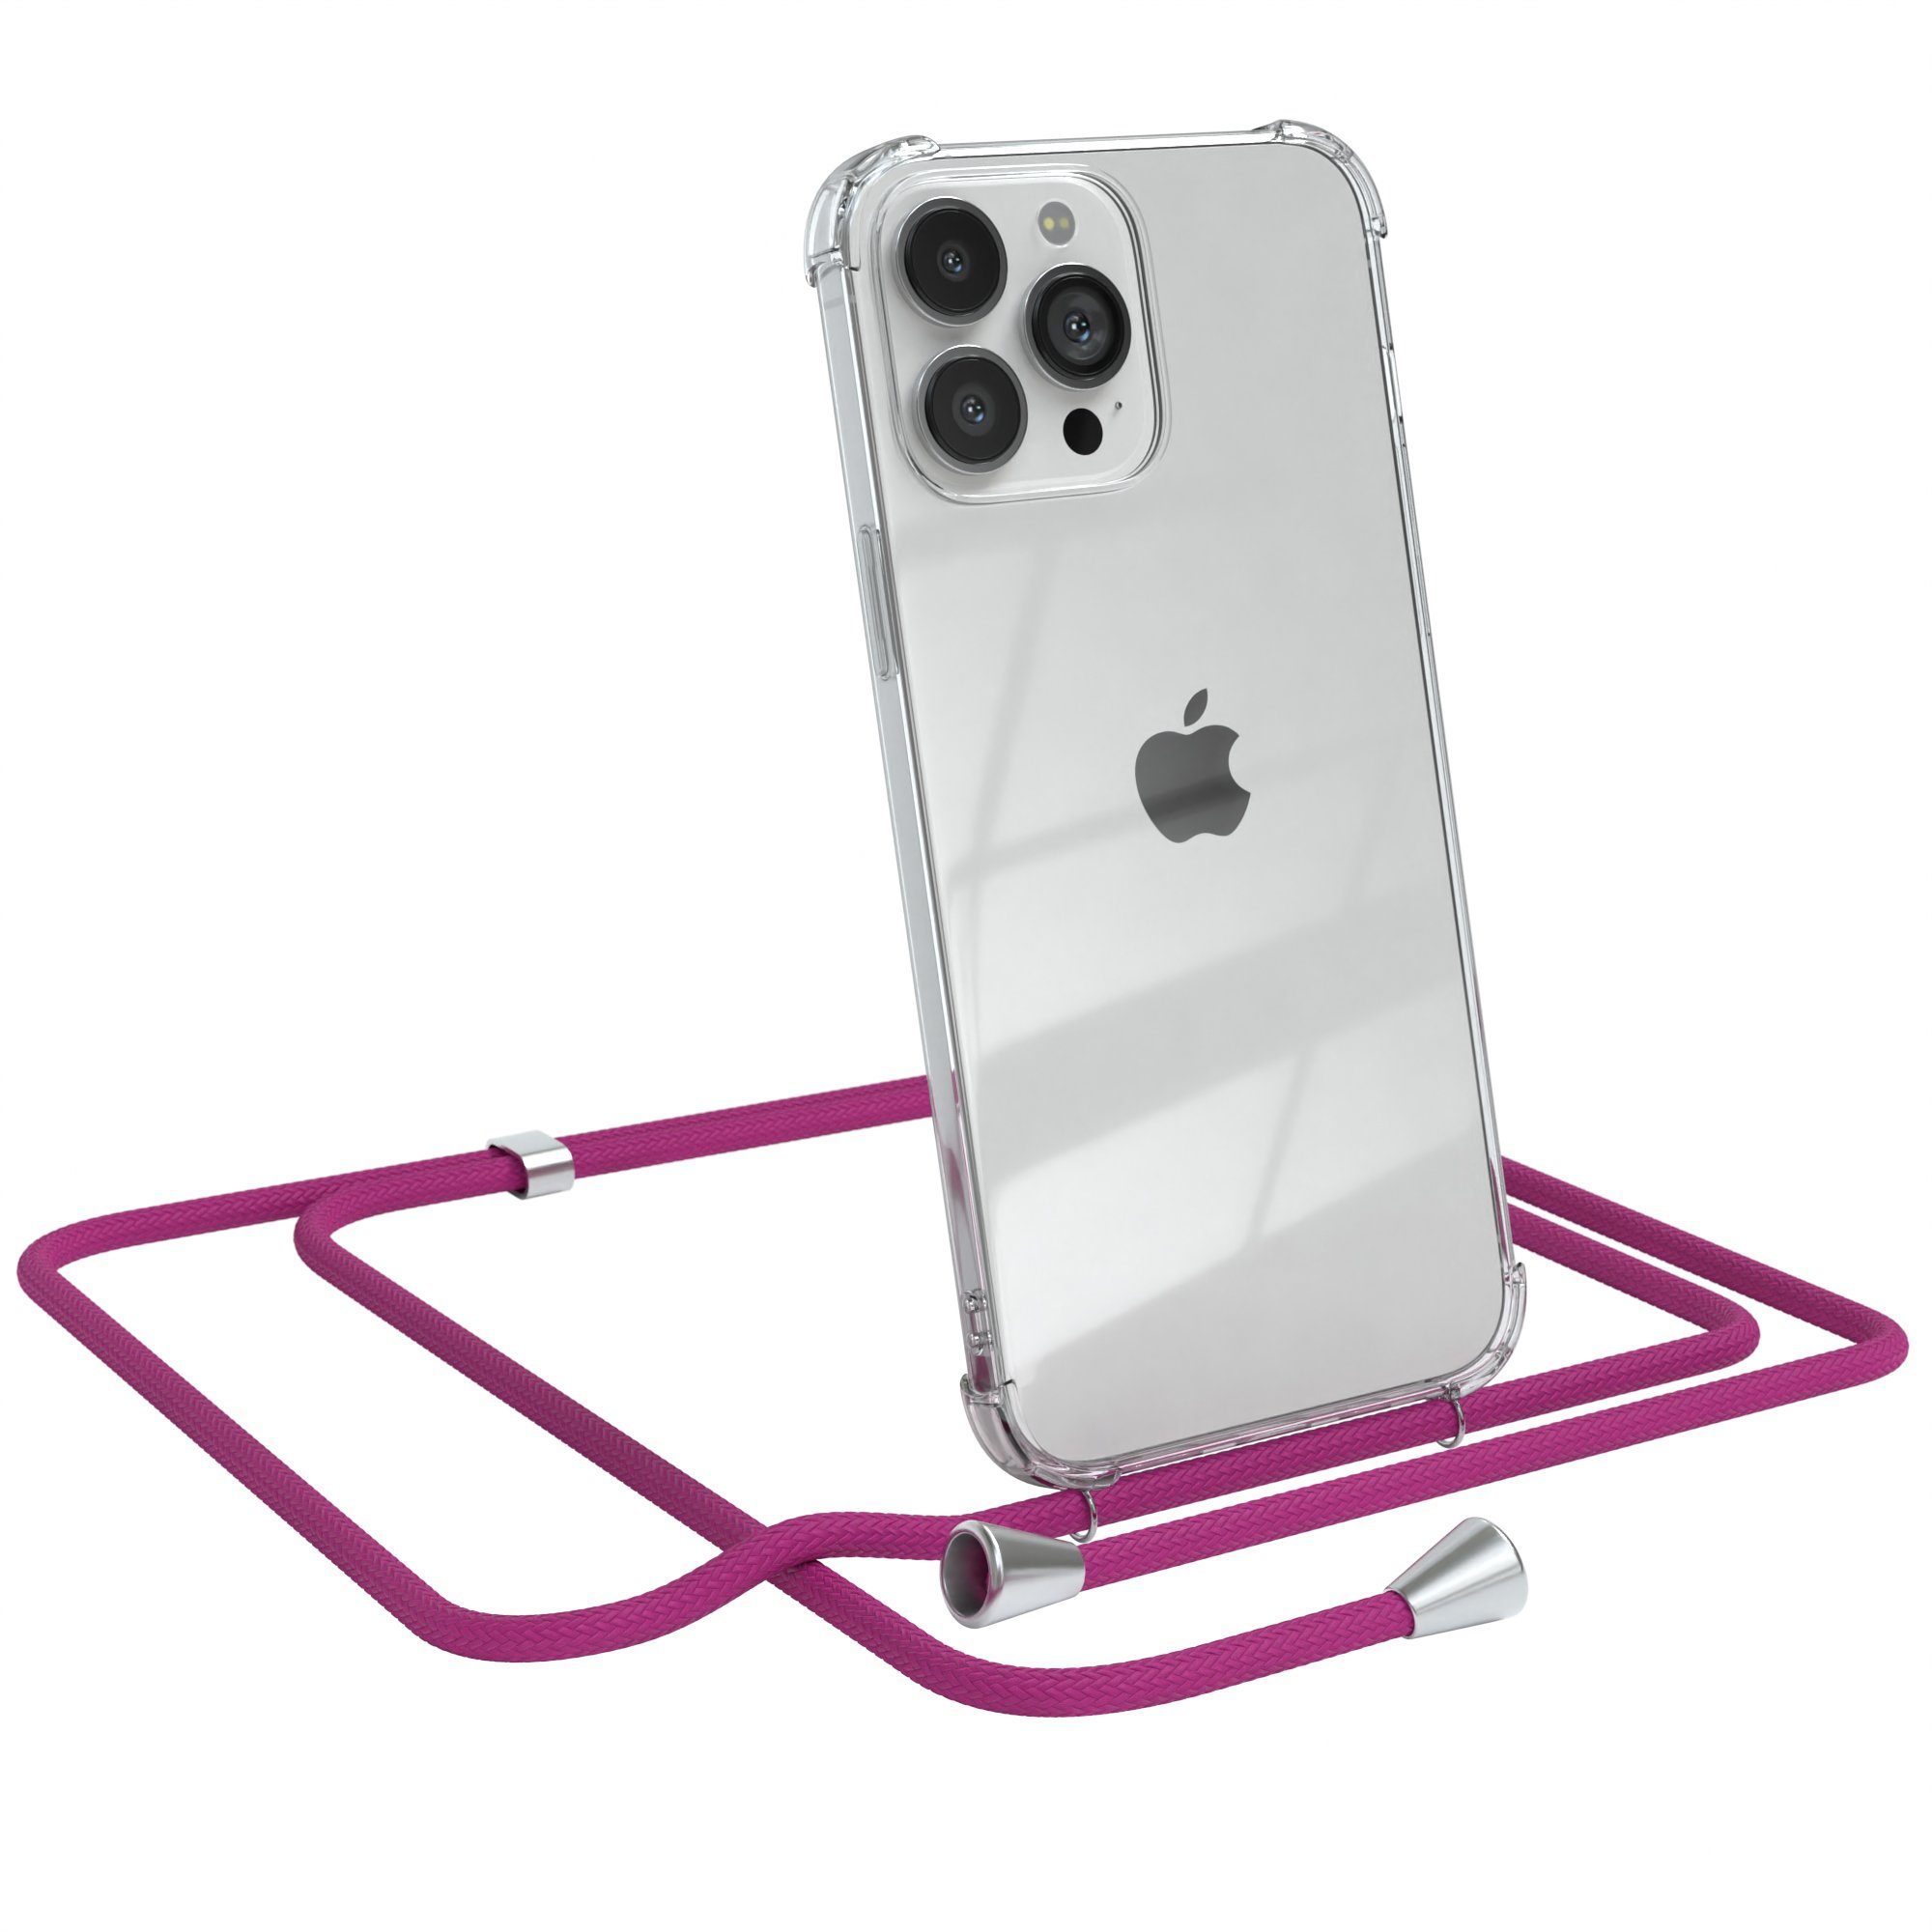 EAZY CASE Handykette Hülle mit Kette für Apple iPhone 13 Pro Max 6,7 Zoll, Handykordel Slimcover mit Umhängeband zum Umhängen Pink / Clip Silber